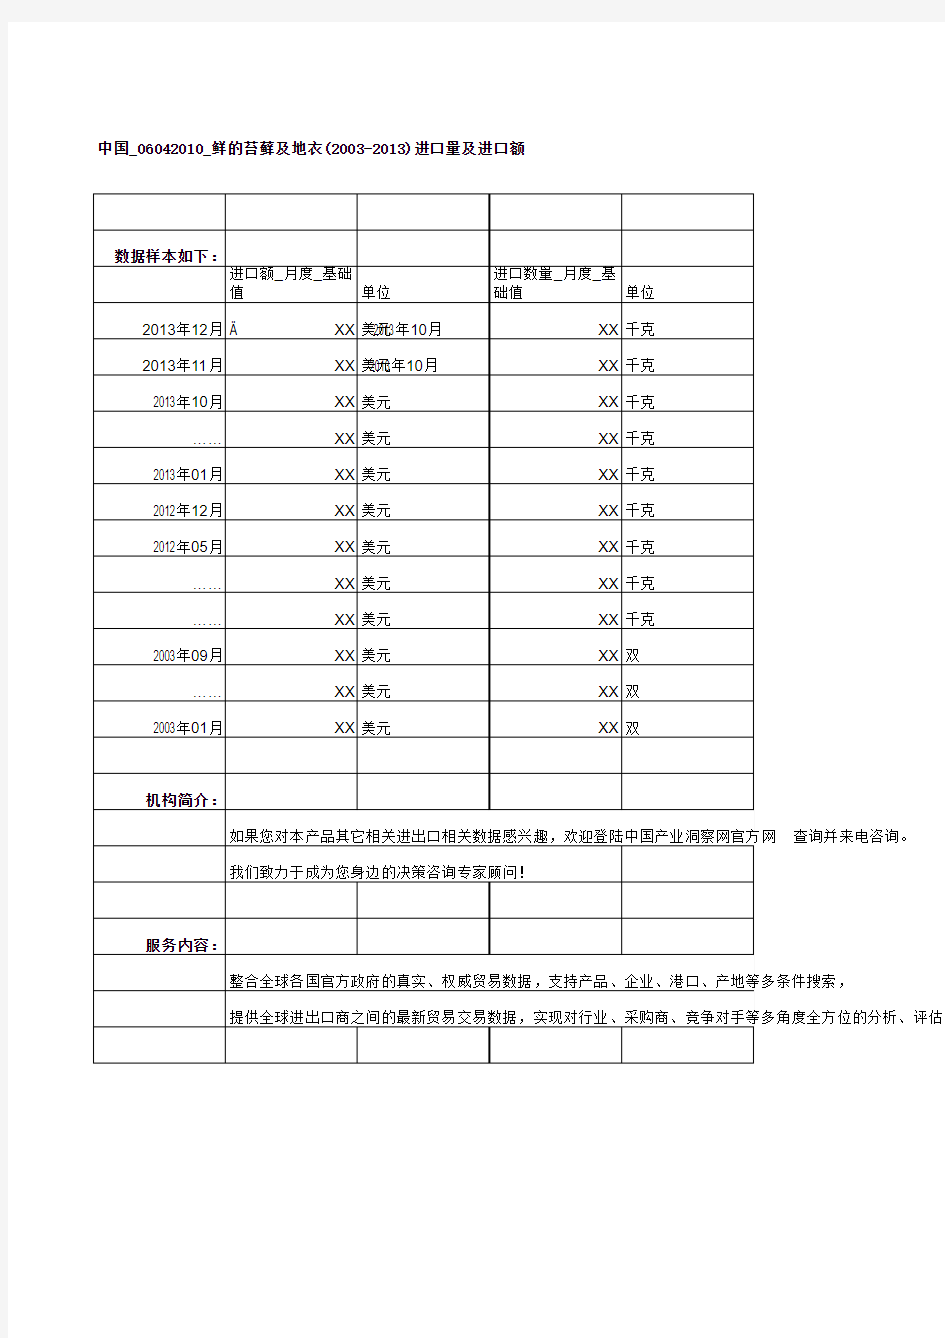 中国_06042010_鲜的苔藓及地衣(2003-2013)进口量及进口额